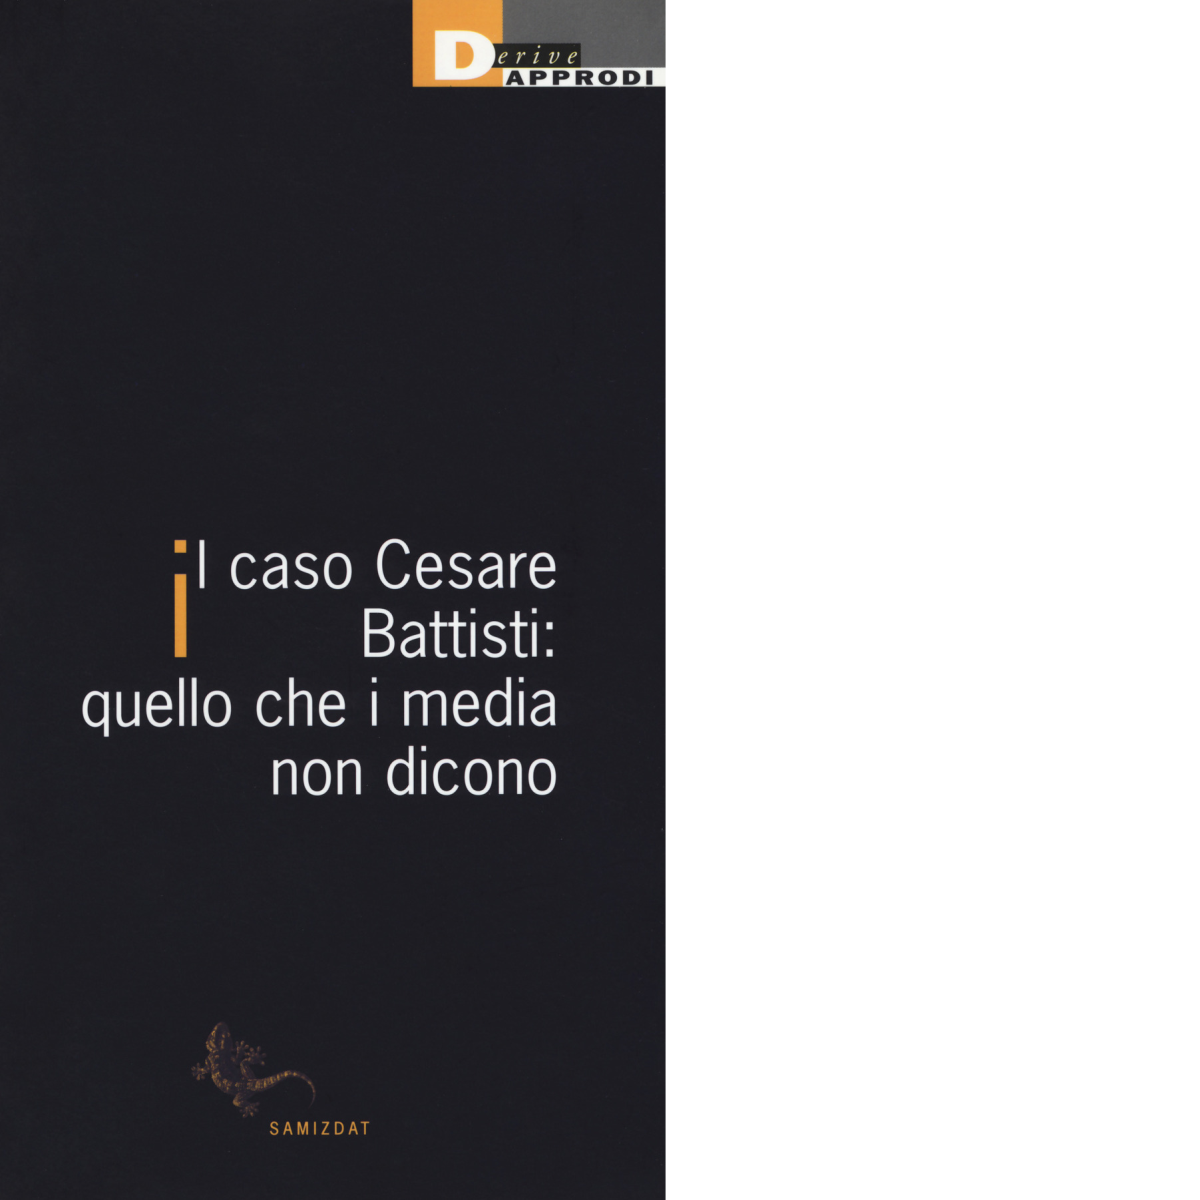 CASO CESARE BATTISTI di AA.VV. - DeriveApprodi editore, 2019